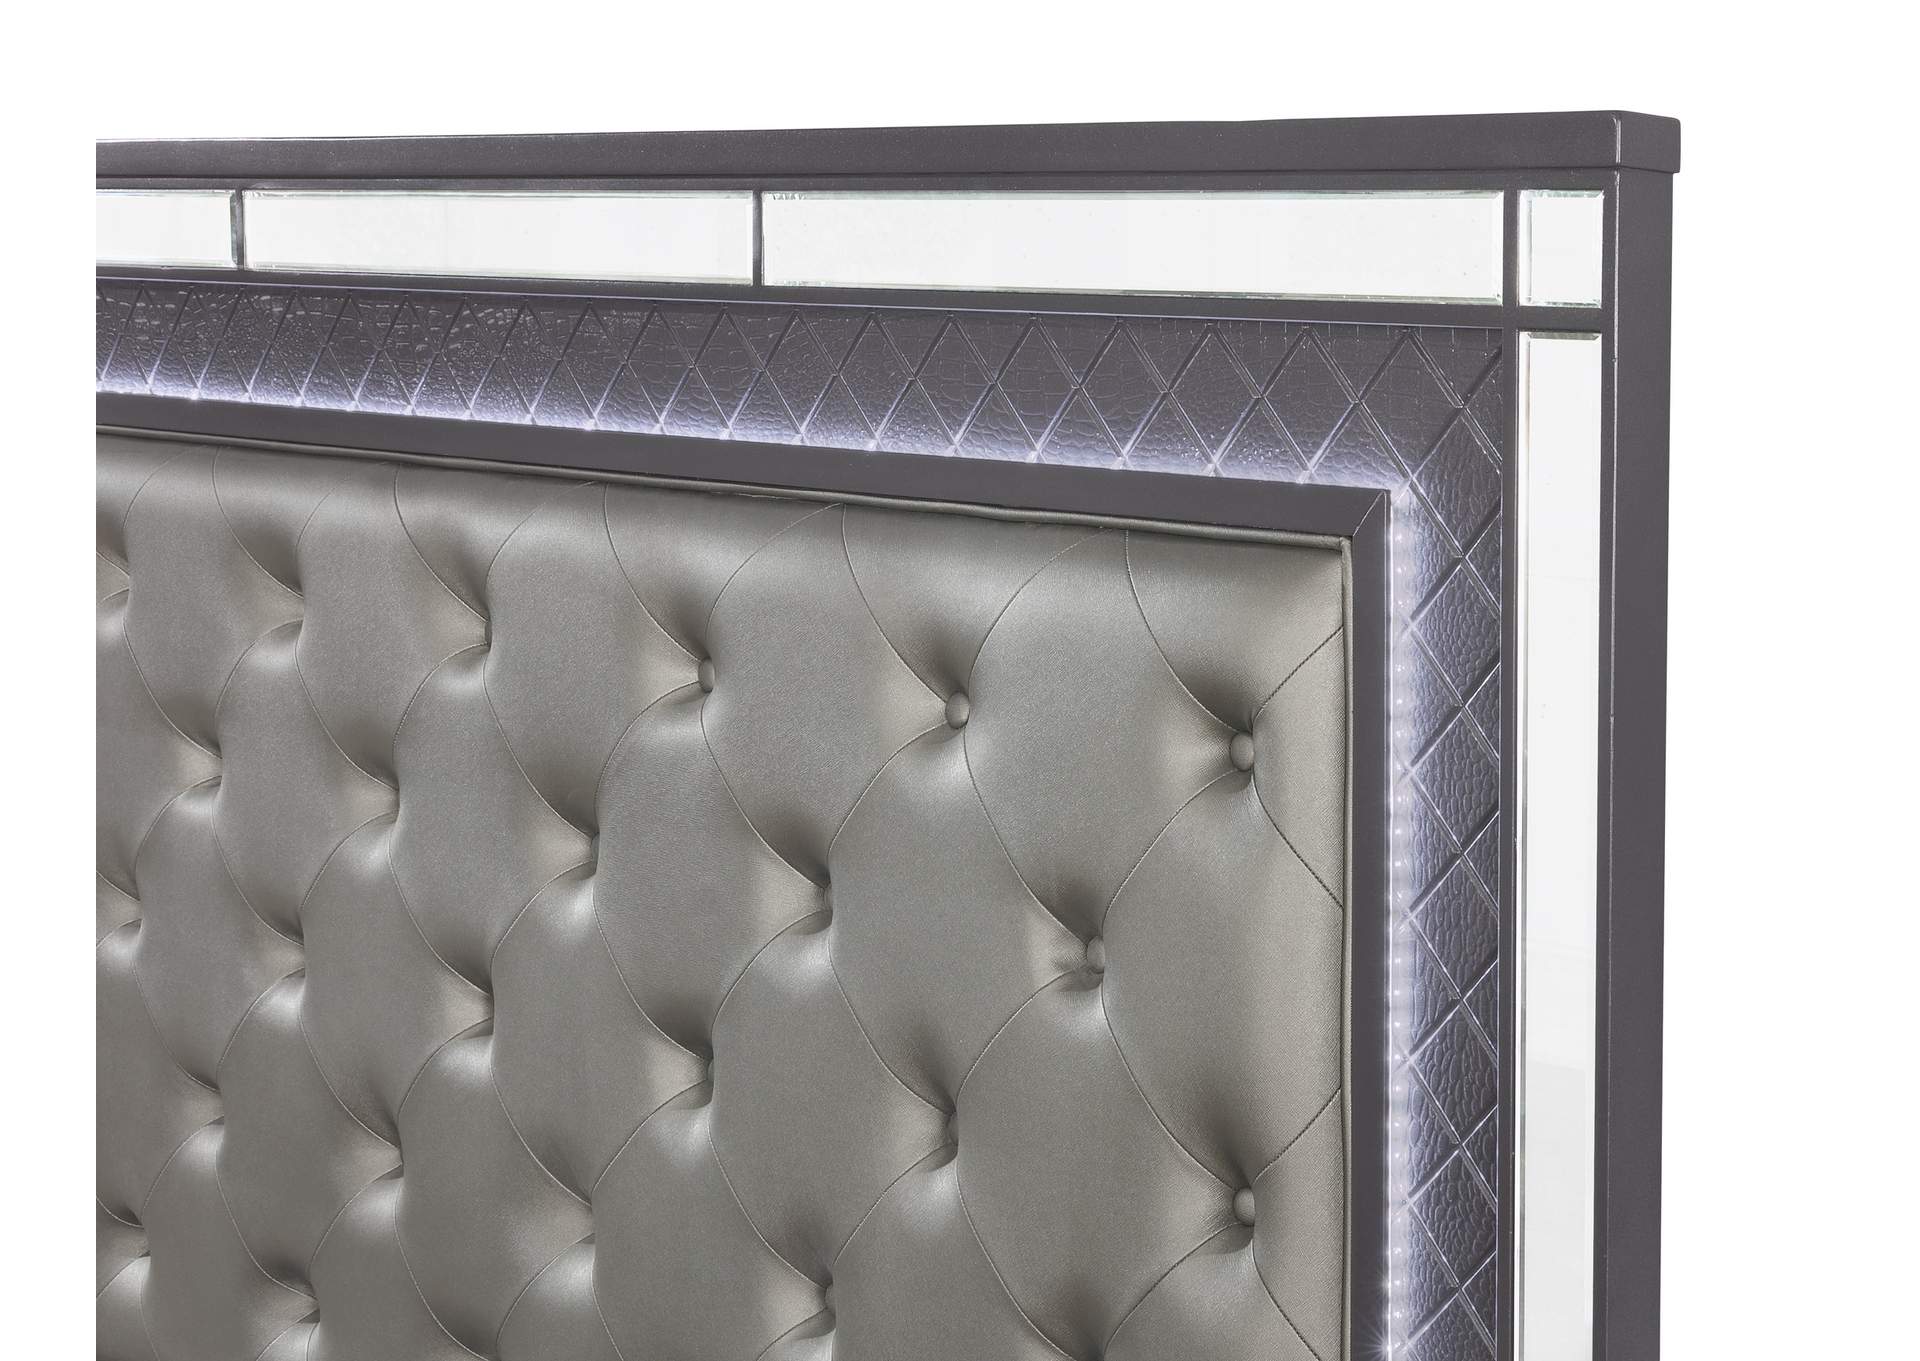 Refino Stainless Steel/Black Queen Bed W/ Dresser & Mirror,Crown Mark